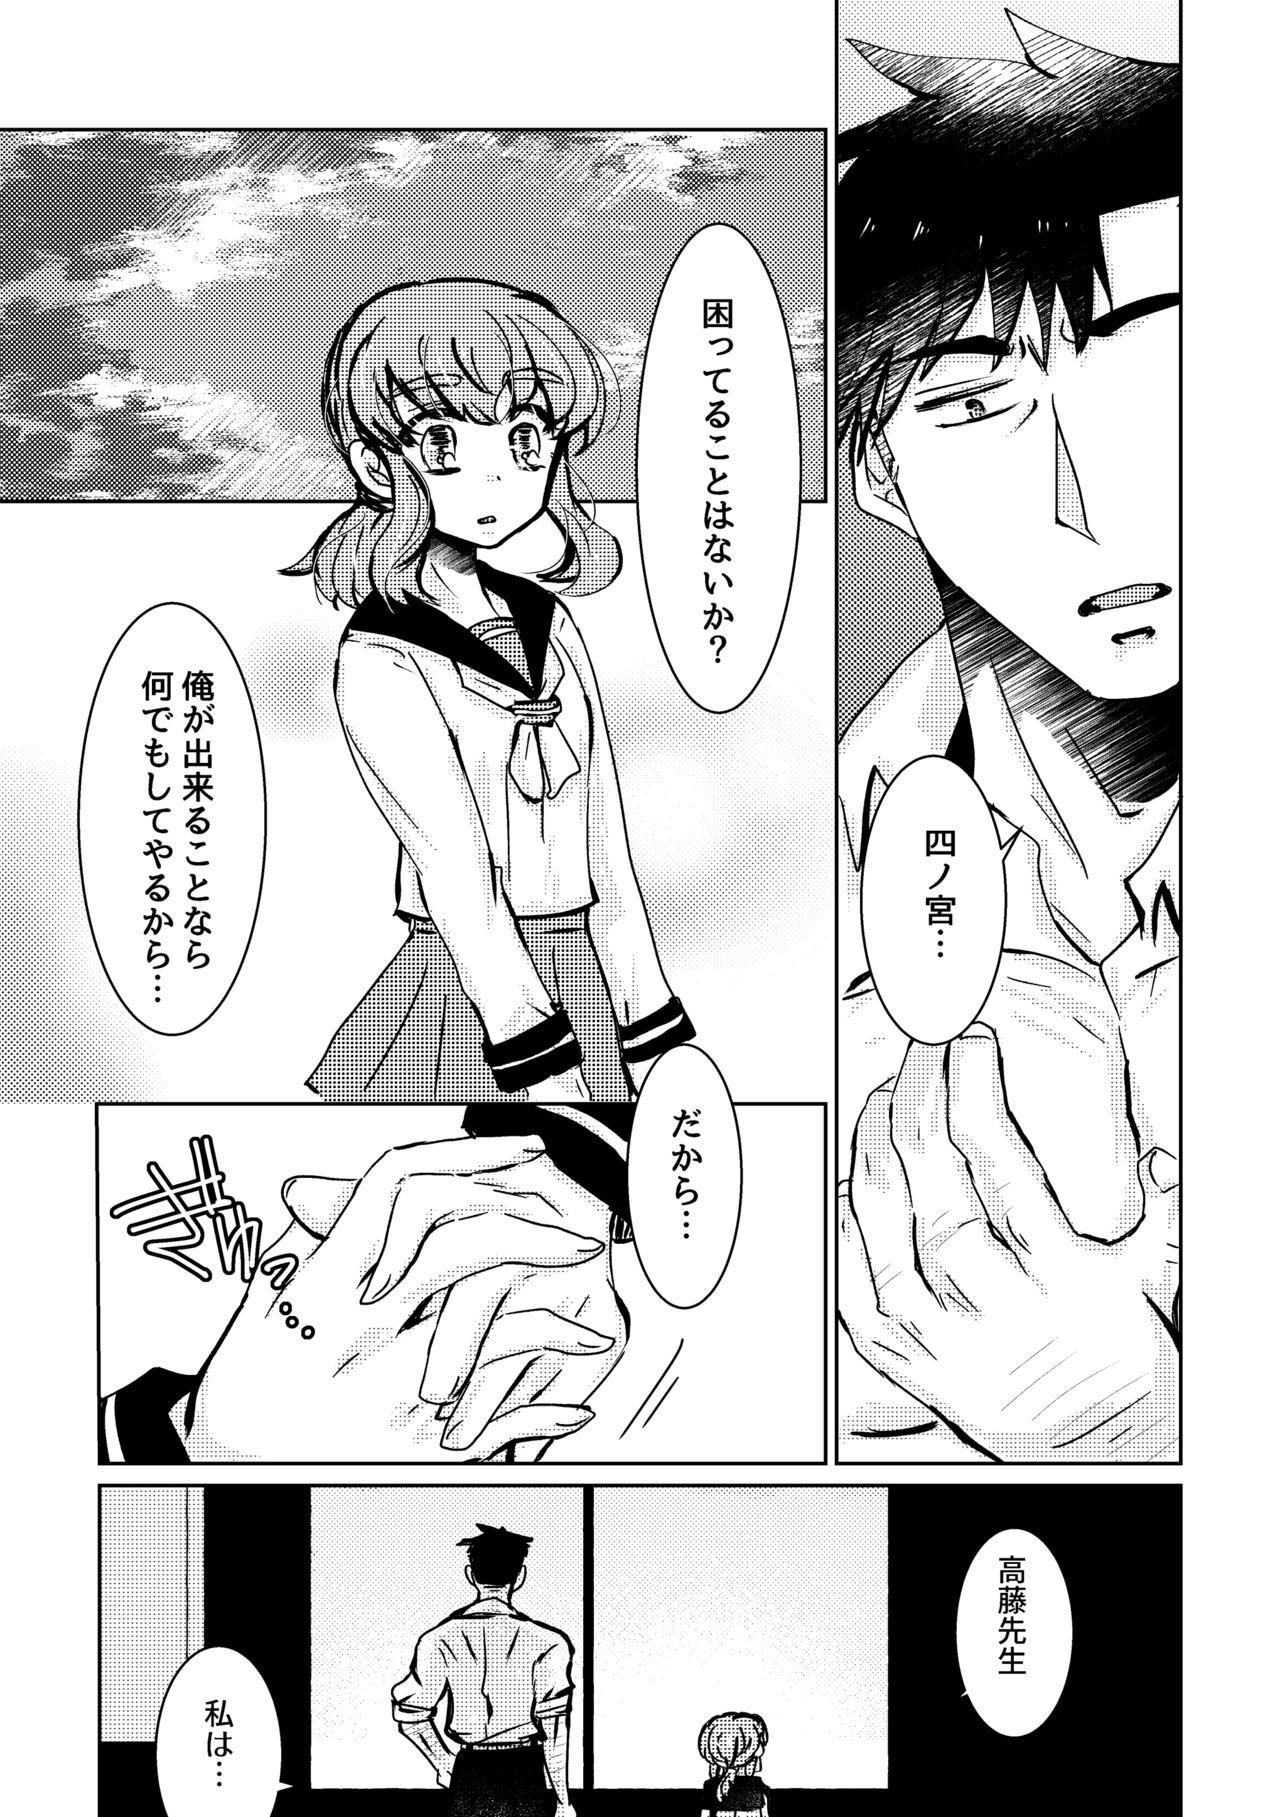 Trannies Kareya Yoru no Hanaka Episode 3 Pendeja - Page 11